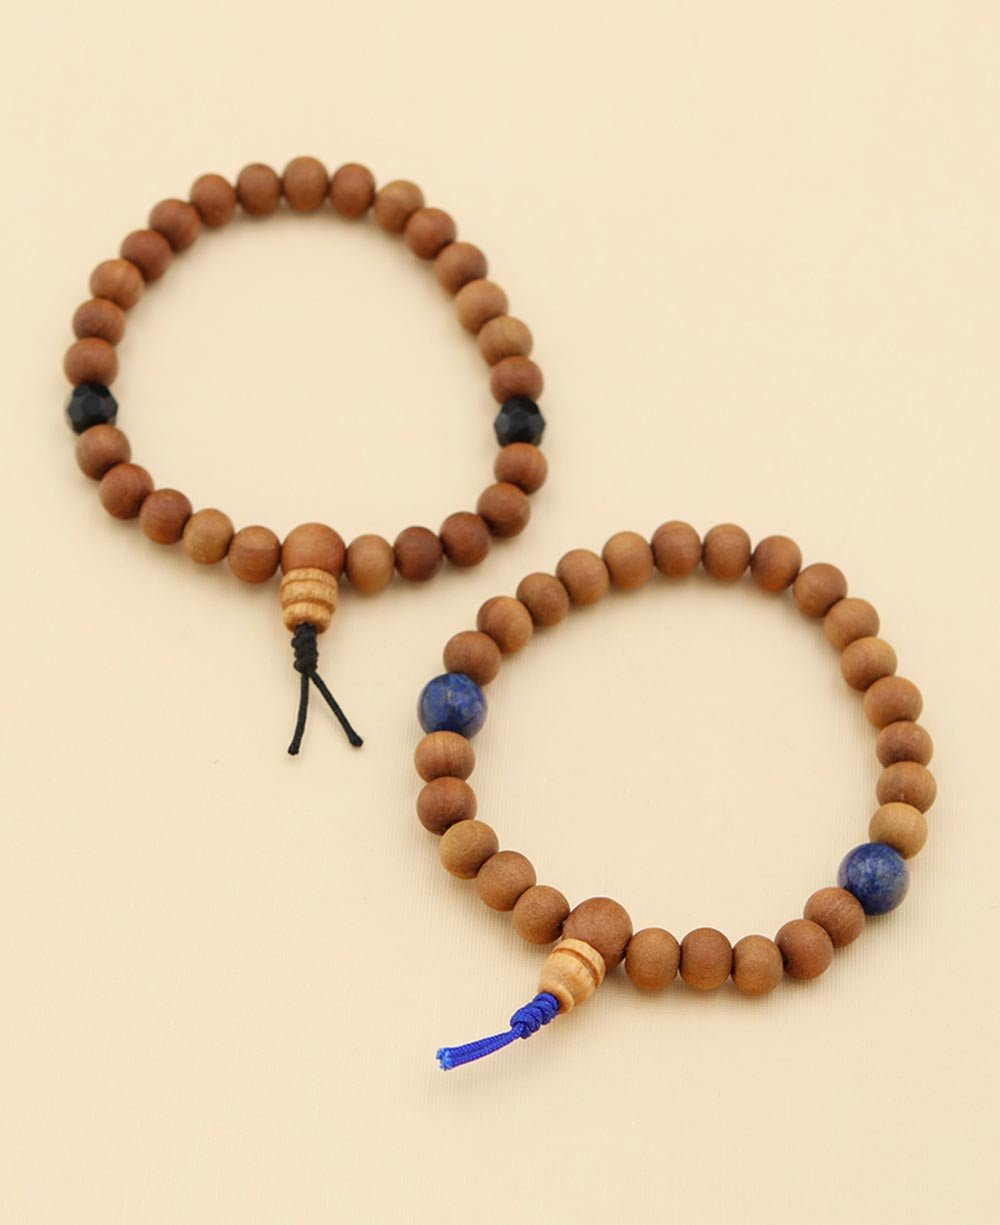 Premium Photo  Yoga mala beads for meditation isolated background